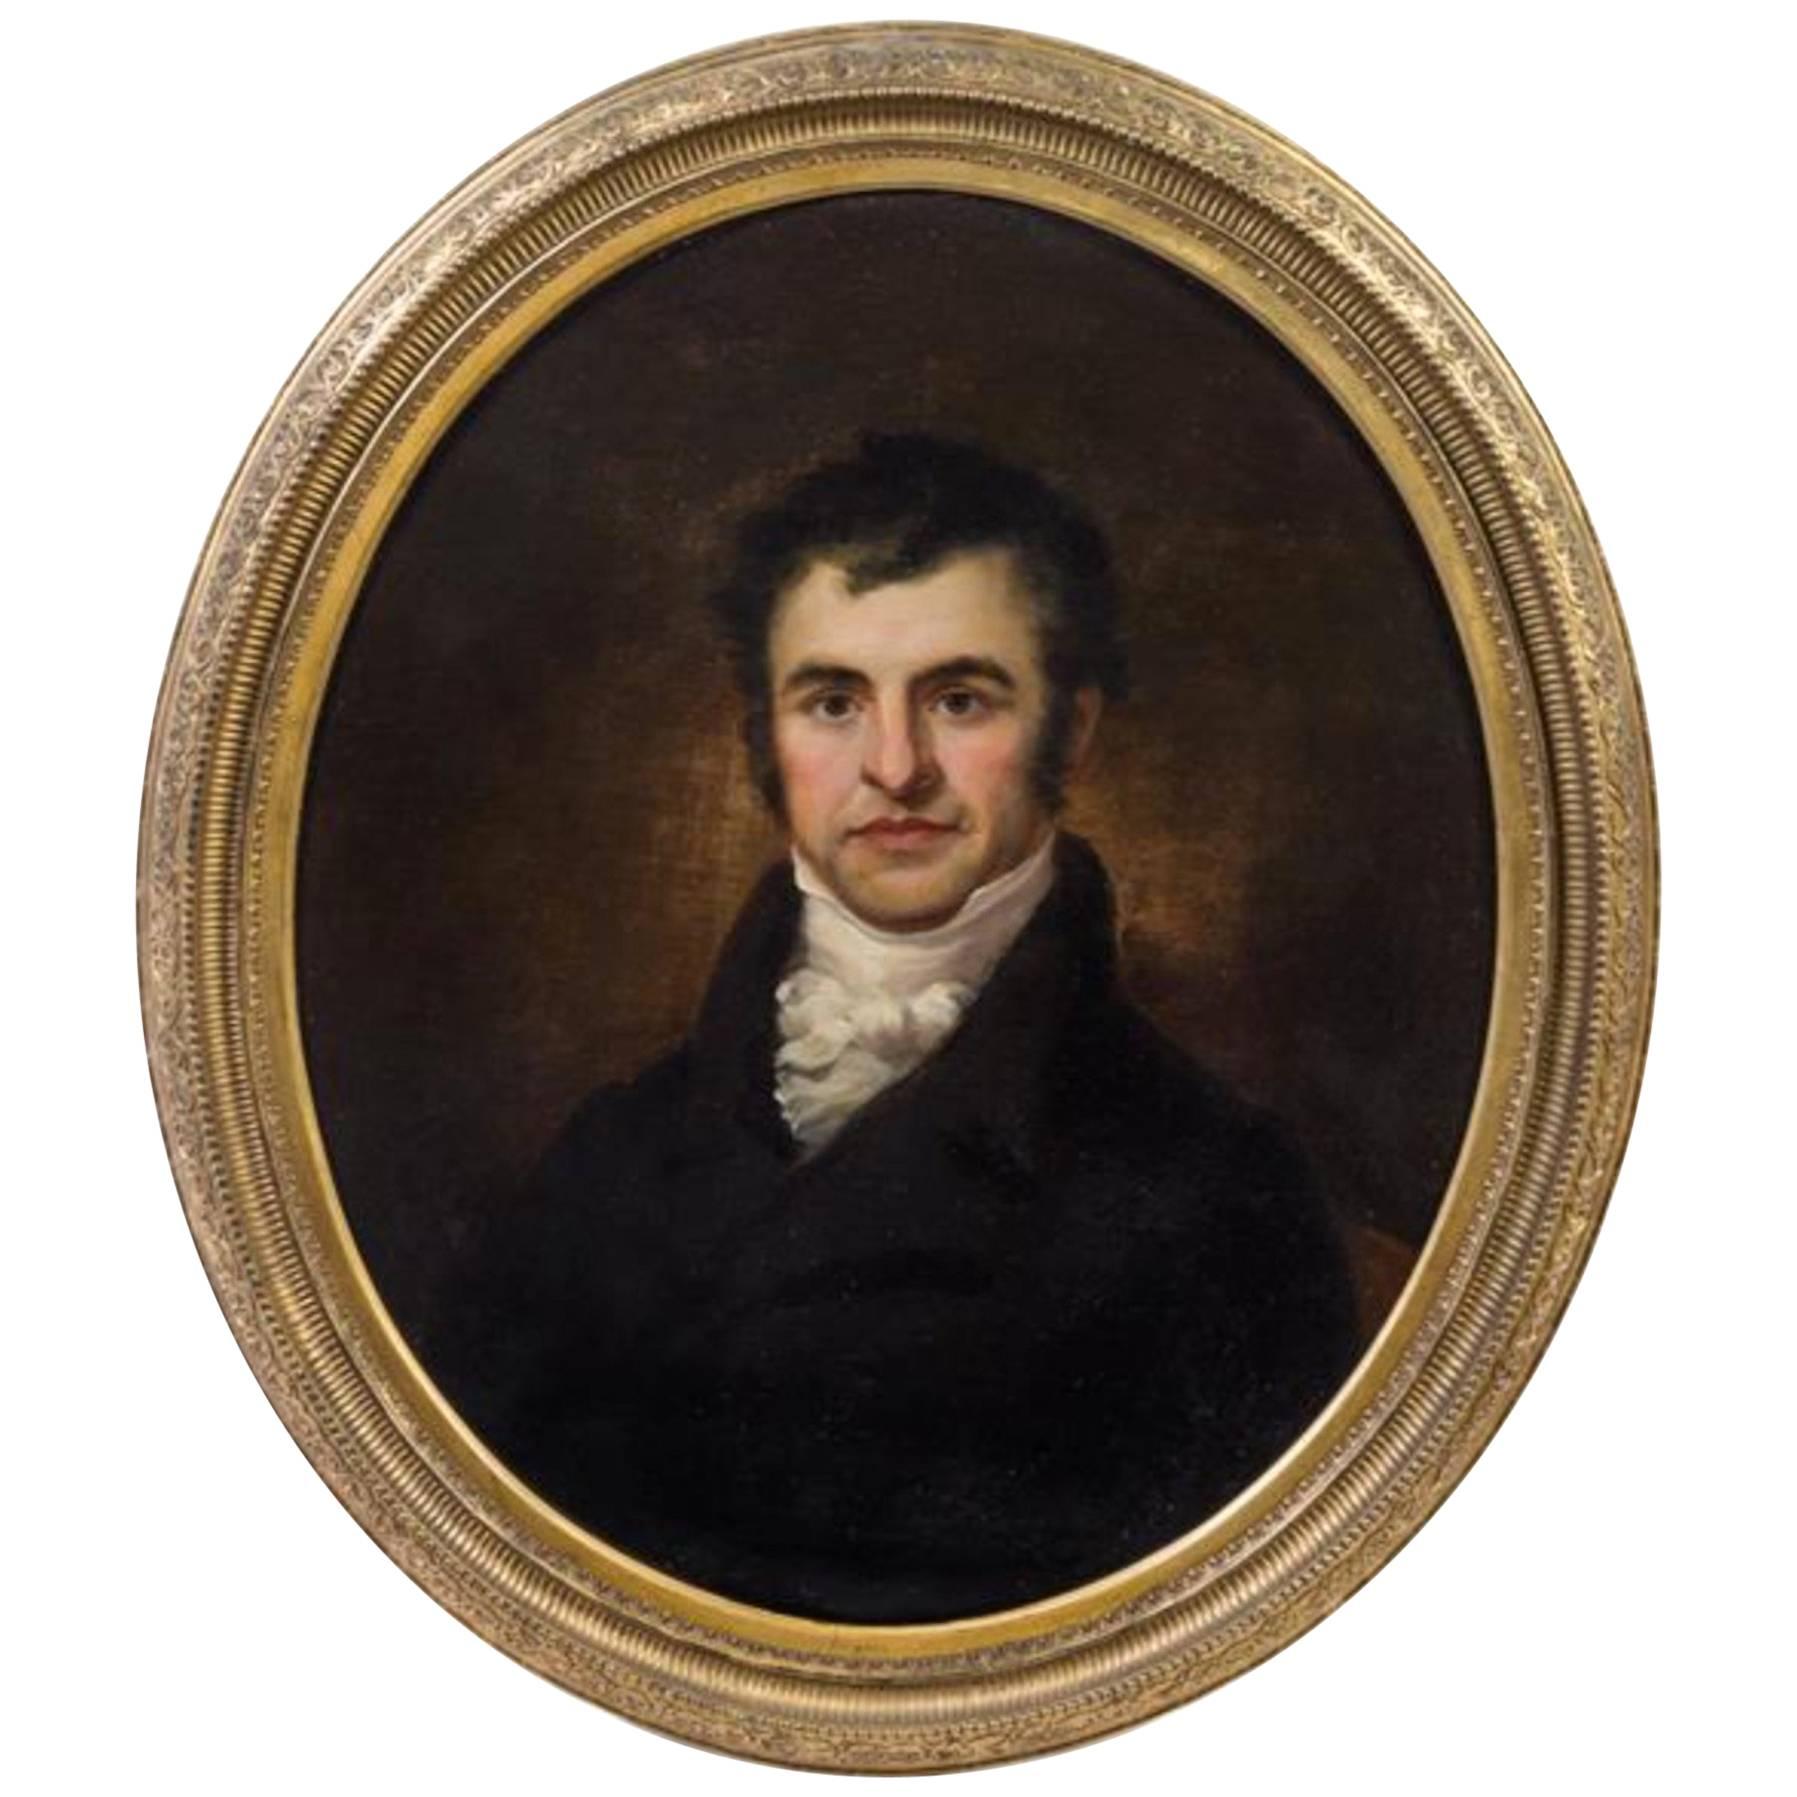  Artiste inconnu Portrait de Robert Burns sur toile, début du XIXe siècle, huile sur toile